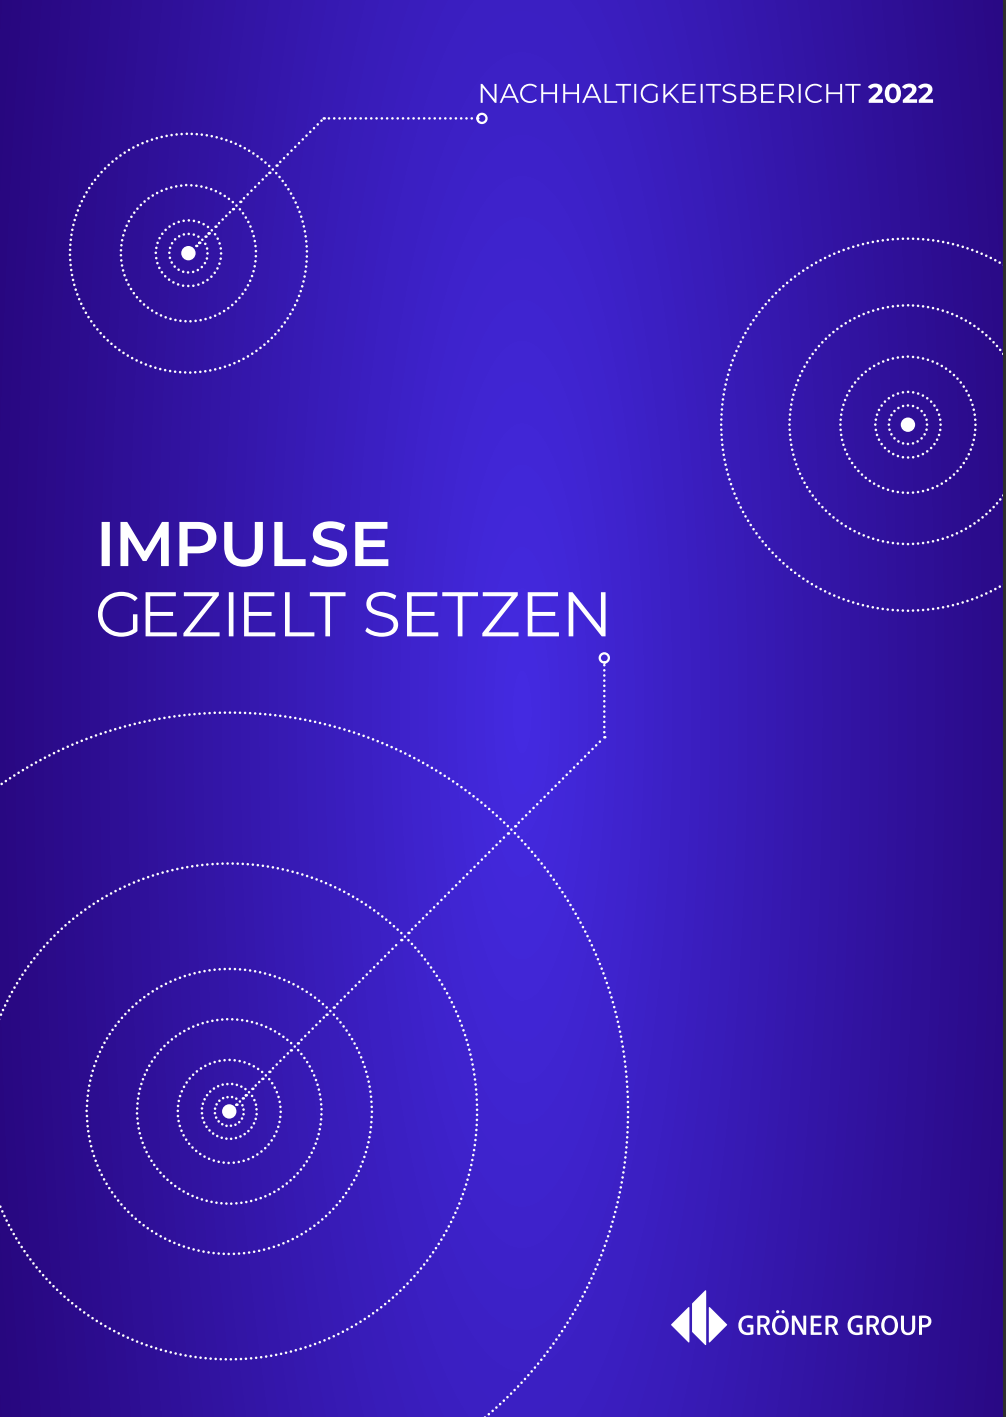 Gröner-Group-Nachhaltigkeitsbericht-2022-Cover